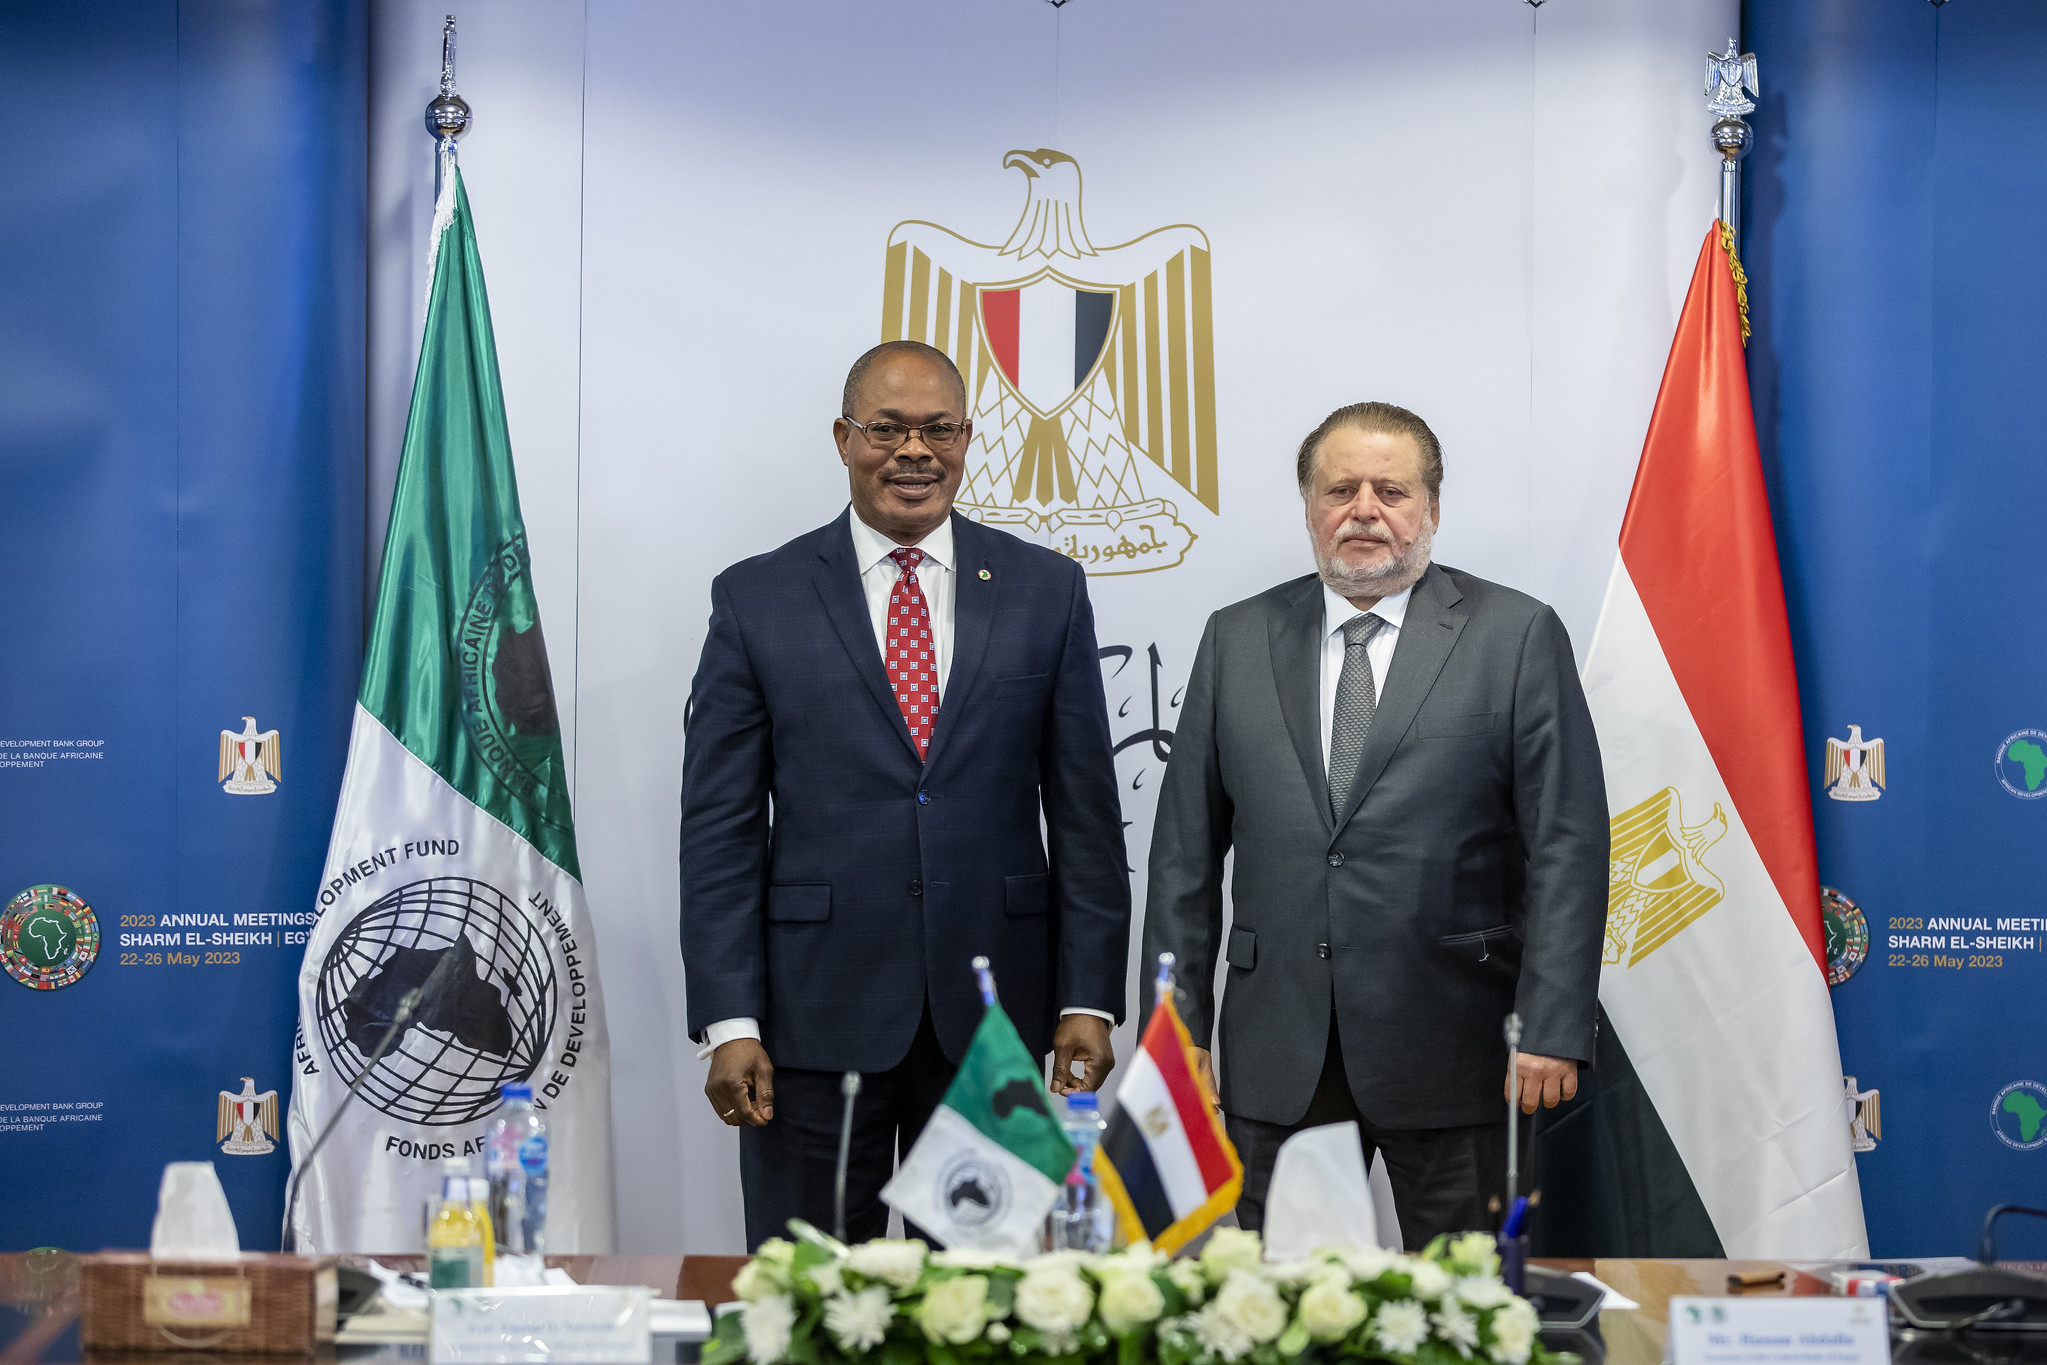 L’Égypte et le Groupe de la Banque africaine de développement signent un protocole d’accord pour accueillir les Assemblées annuelles 2023 à Charm el-Cheikh